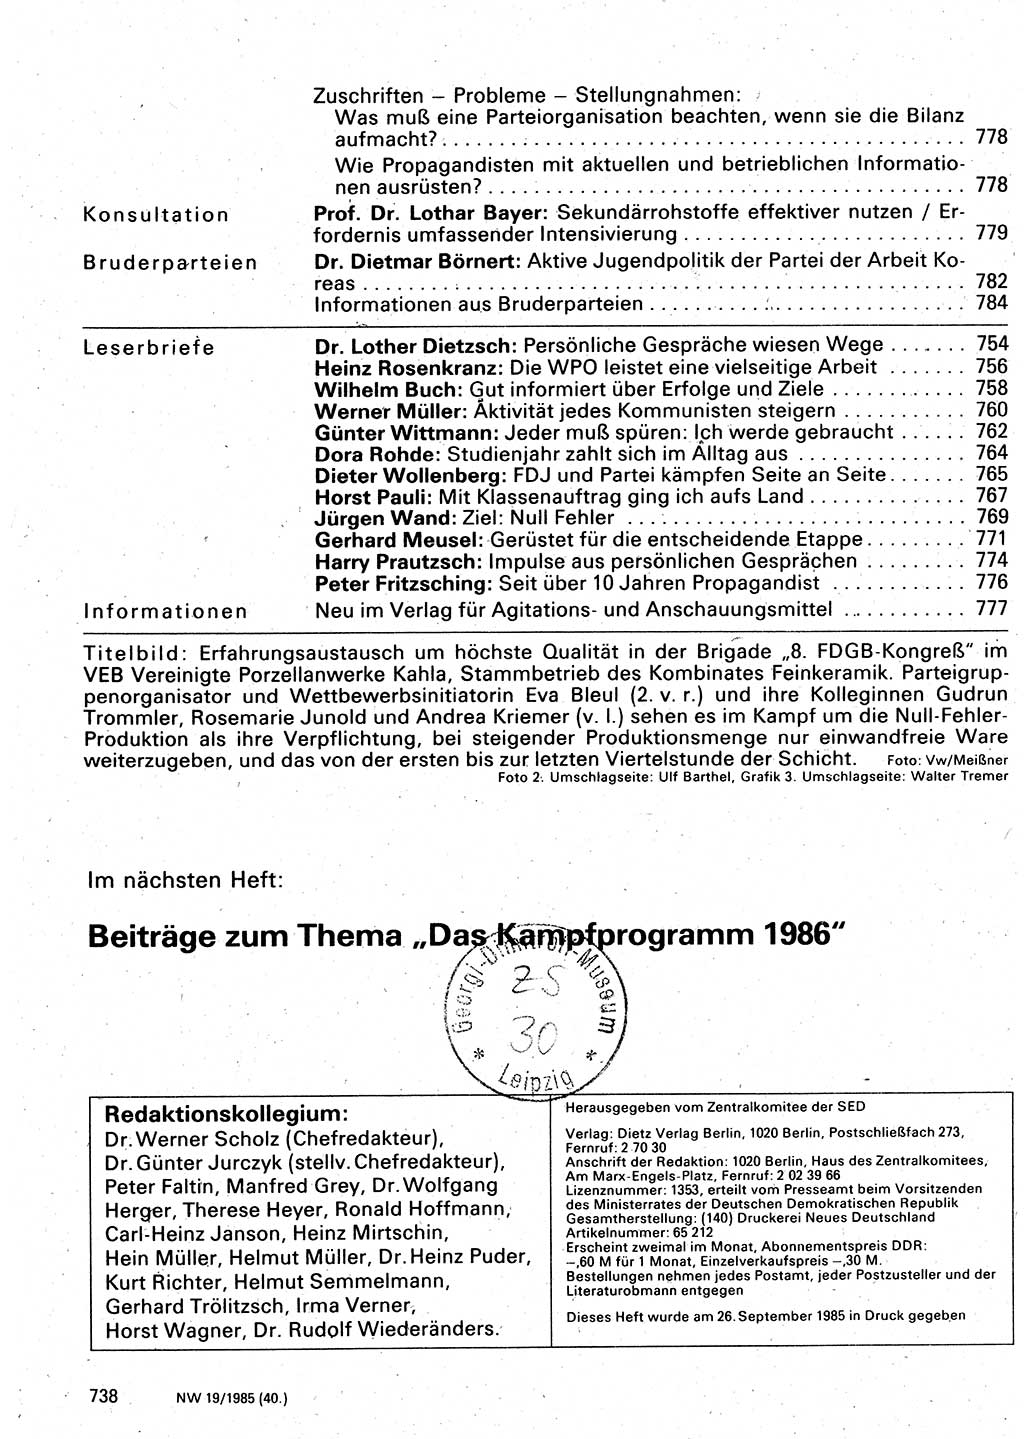 Neuer Weg (NW), Organ des Zentralkomitees (ZK) der SED (Sozialistische Einheitspartei Deutschlands) für Fragen des Parteilebens, 40. Jahrgang [Deutsche Demokratische Republik (DDR)] 1985, Seite 738 (NW ZK SED DDR 1985, S. 738)